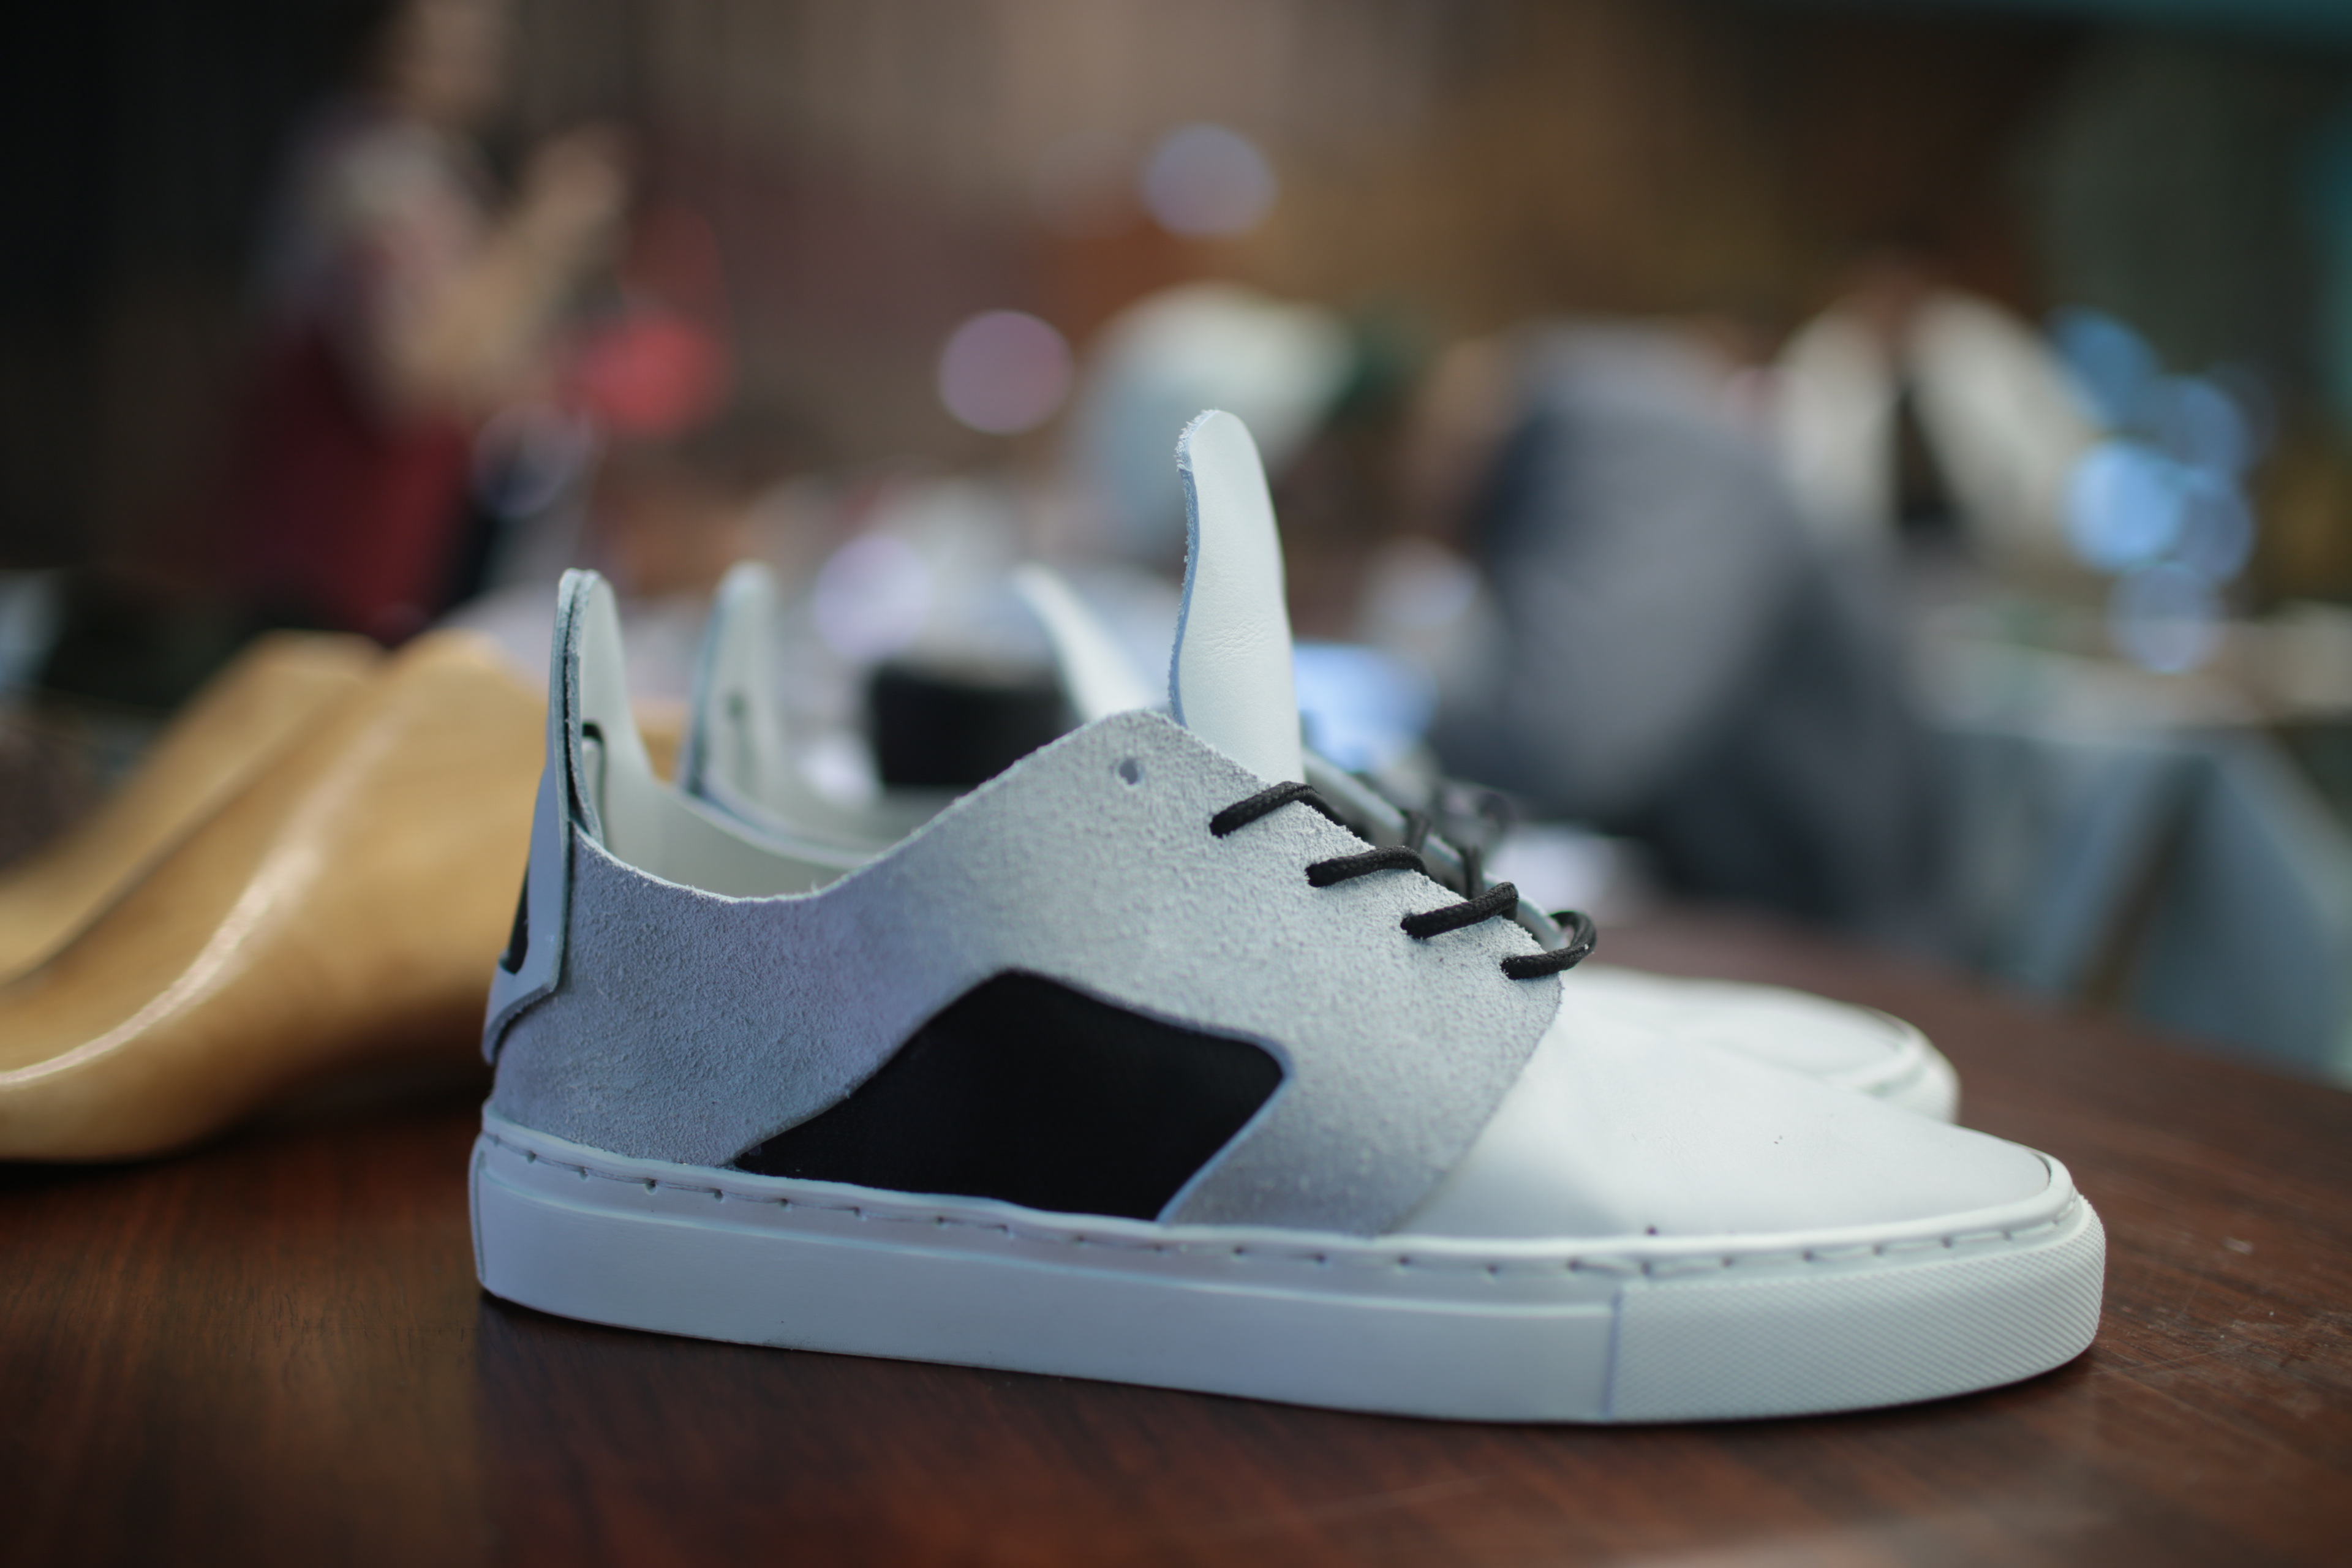 Daniel Woolhiser - Handmade Leather Sneakers